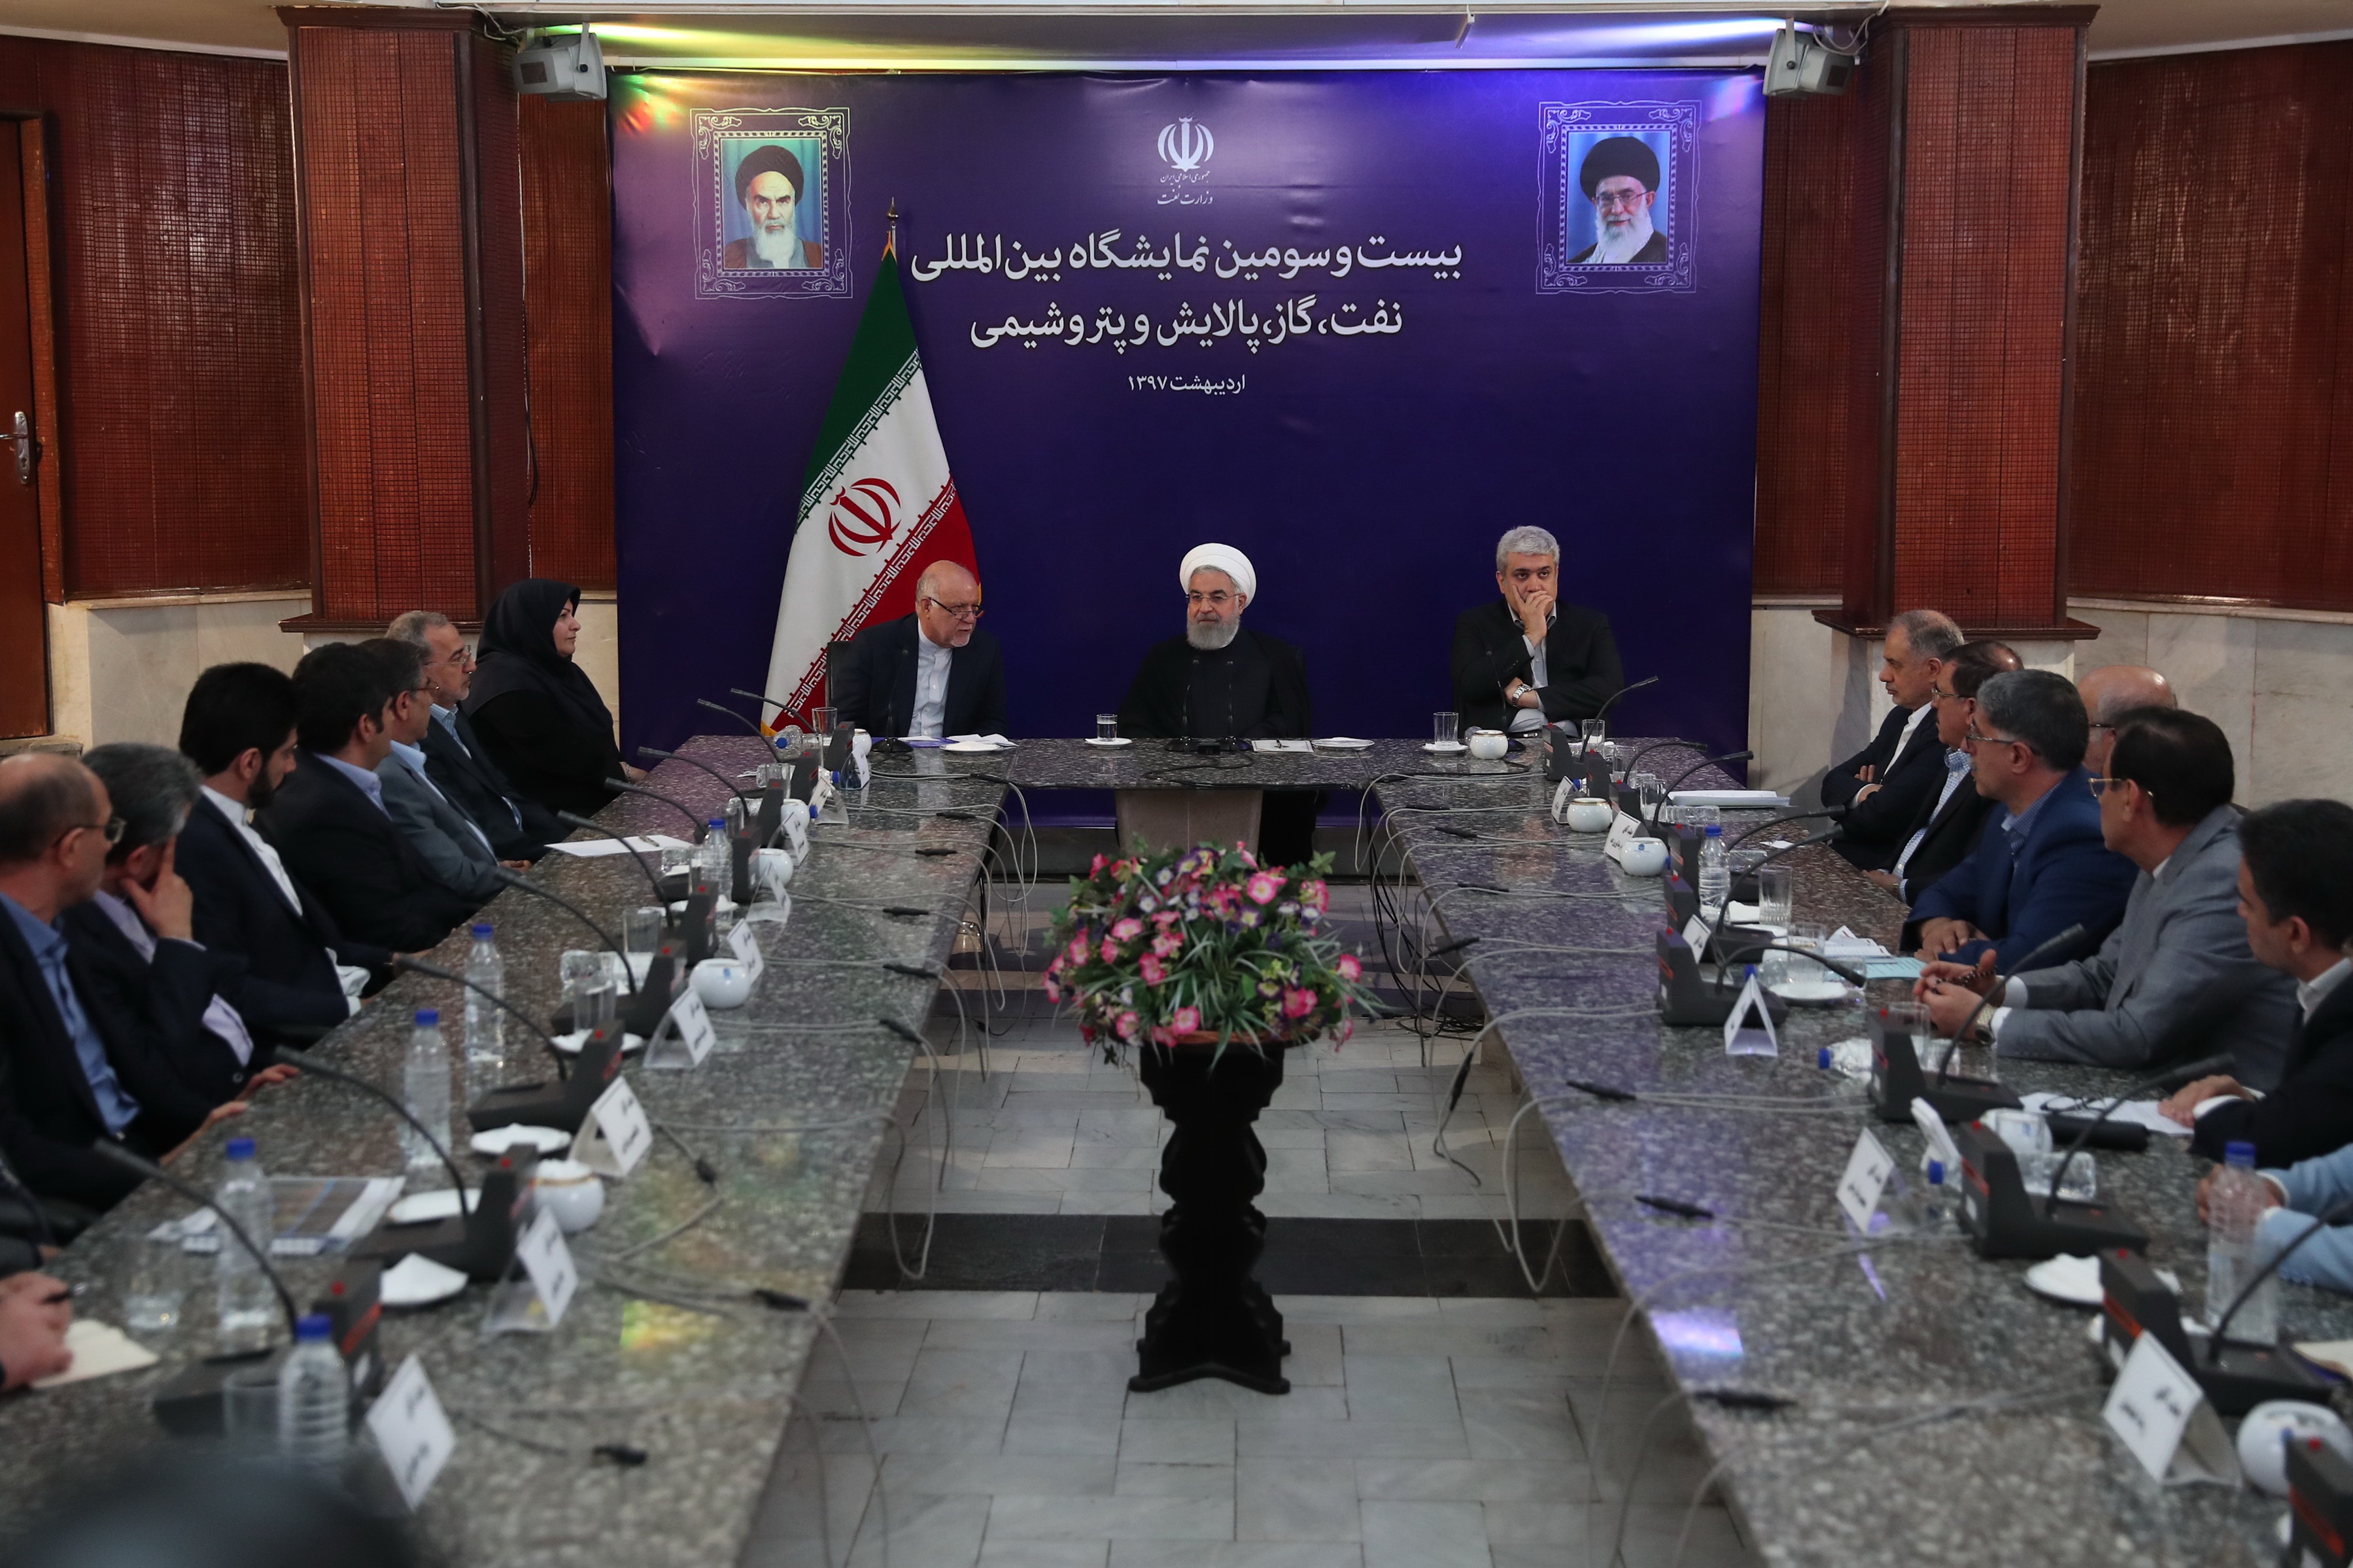 روحانی: سیاست ما تعامل با دنیاست/ مردم نظام را قبول دارند